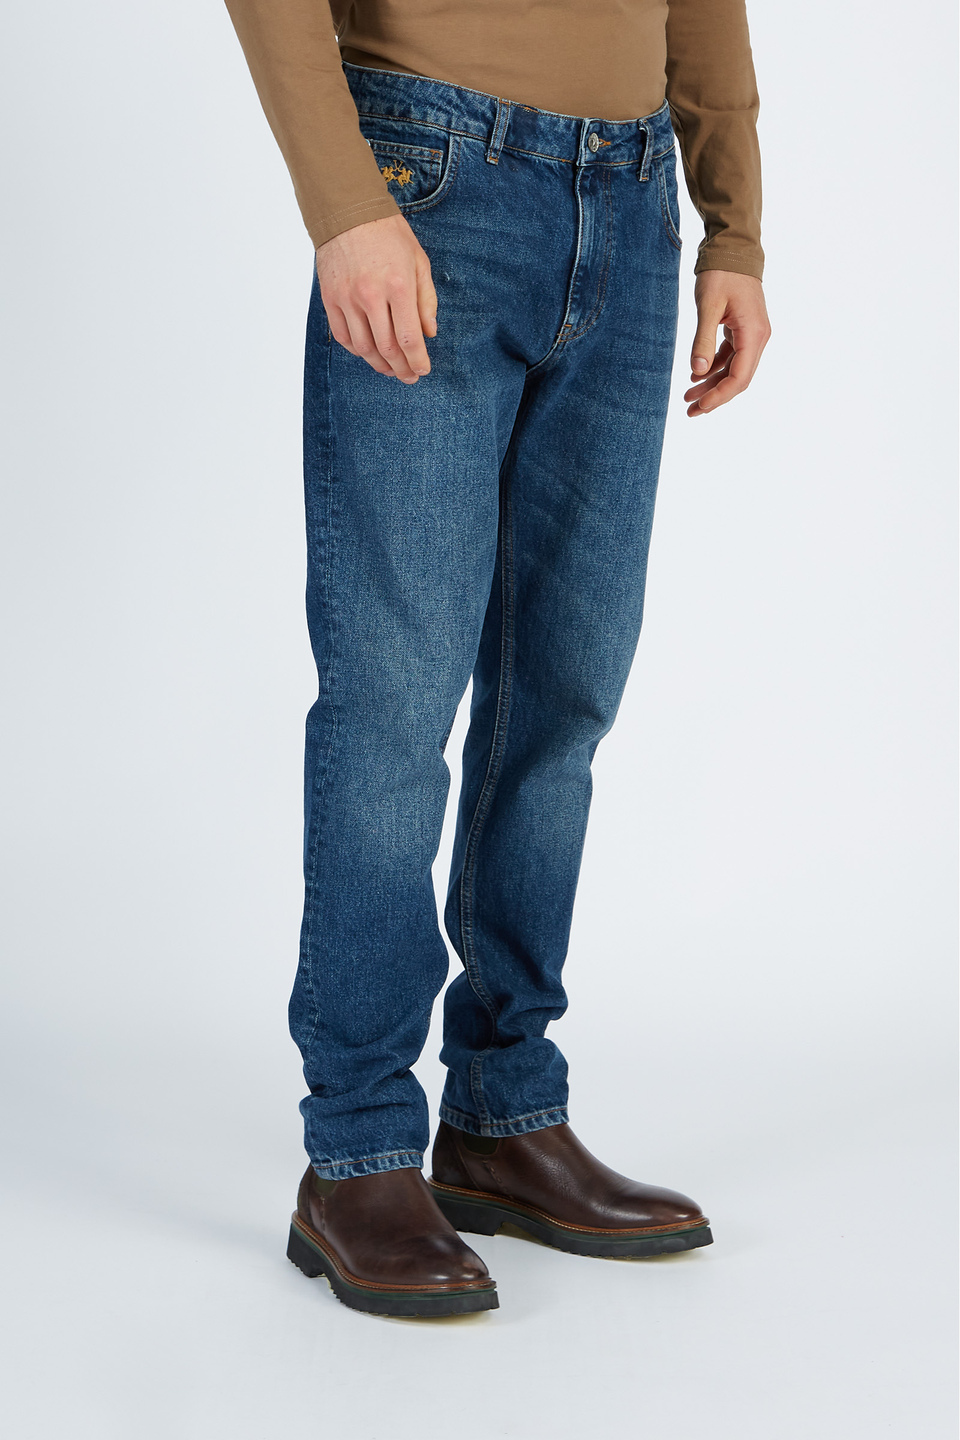 Pantalone da uomo modello 5 tasche in denim regular fit | La Martina - Official Online Shop